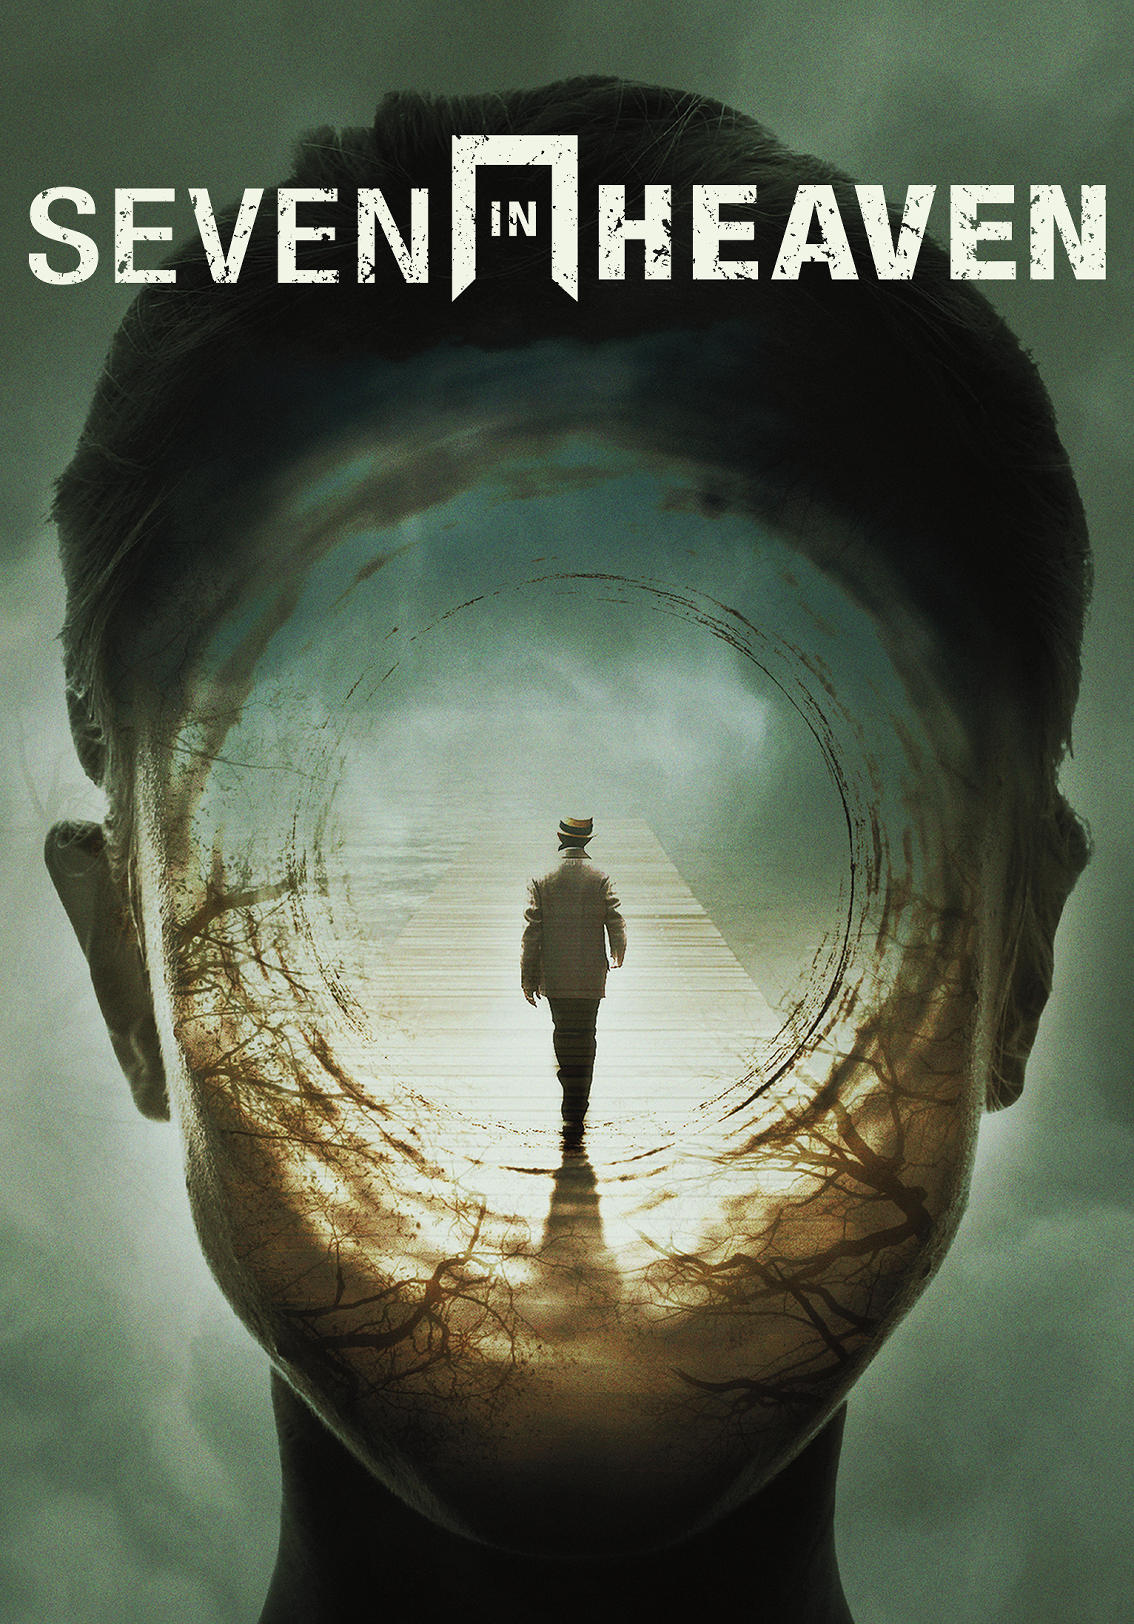 Seven heaven